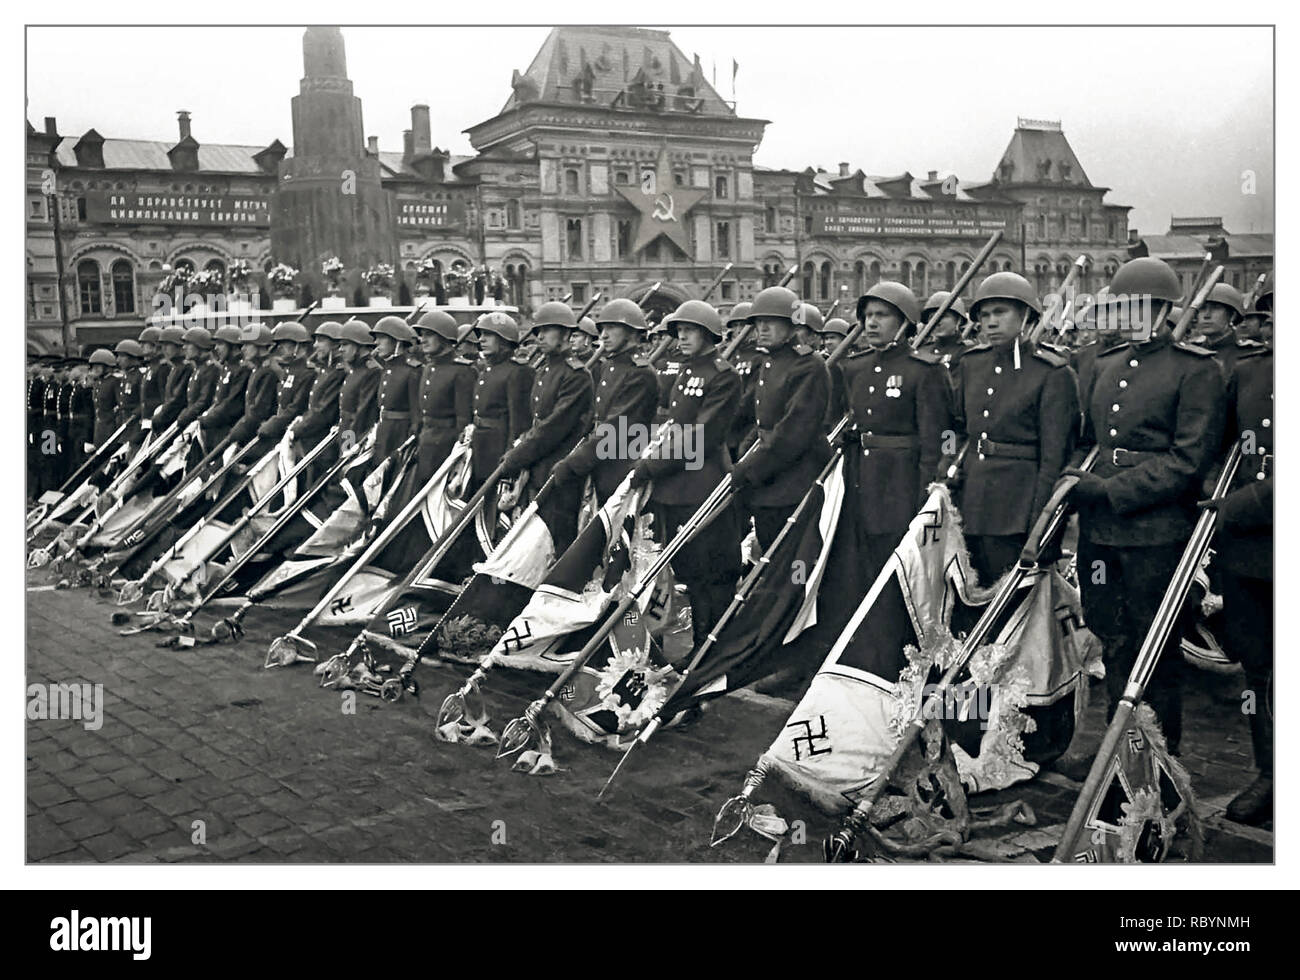 SIEGESPARADE MOSKAU Vintage Post WW2 Bild der Siegesparade auf dem Roten Platz in Moskau. Sowjetische Soldaten der Roten Armee mit besiegten Kampfbannern der Nazi-Truppen. Diese Siegesparade endete mit der Bildung sowjetischer Truppen, die 200 eroberte Kampffanner der besiegten Nazi-Armee trugen. Diese Spruchbänder wurden unter dem Spiel der Trommeln auf eine spezielle Plattform in der Nähe des Leninschen Mausoleums geworfen. Die Flagge der SS-Division „Leibstandarte SS Adolf Hitler“ wurde zuerst geworfen. Roter Platz Moskau, UdSSR Datum: Juni 1945 Stockfoto